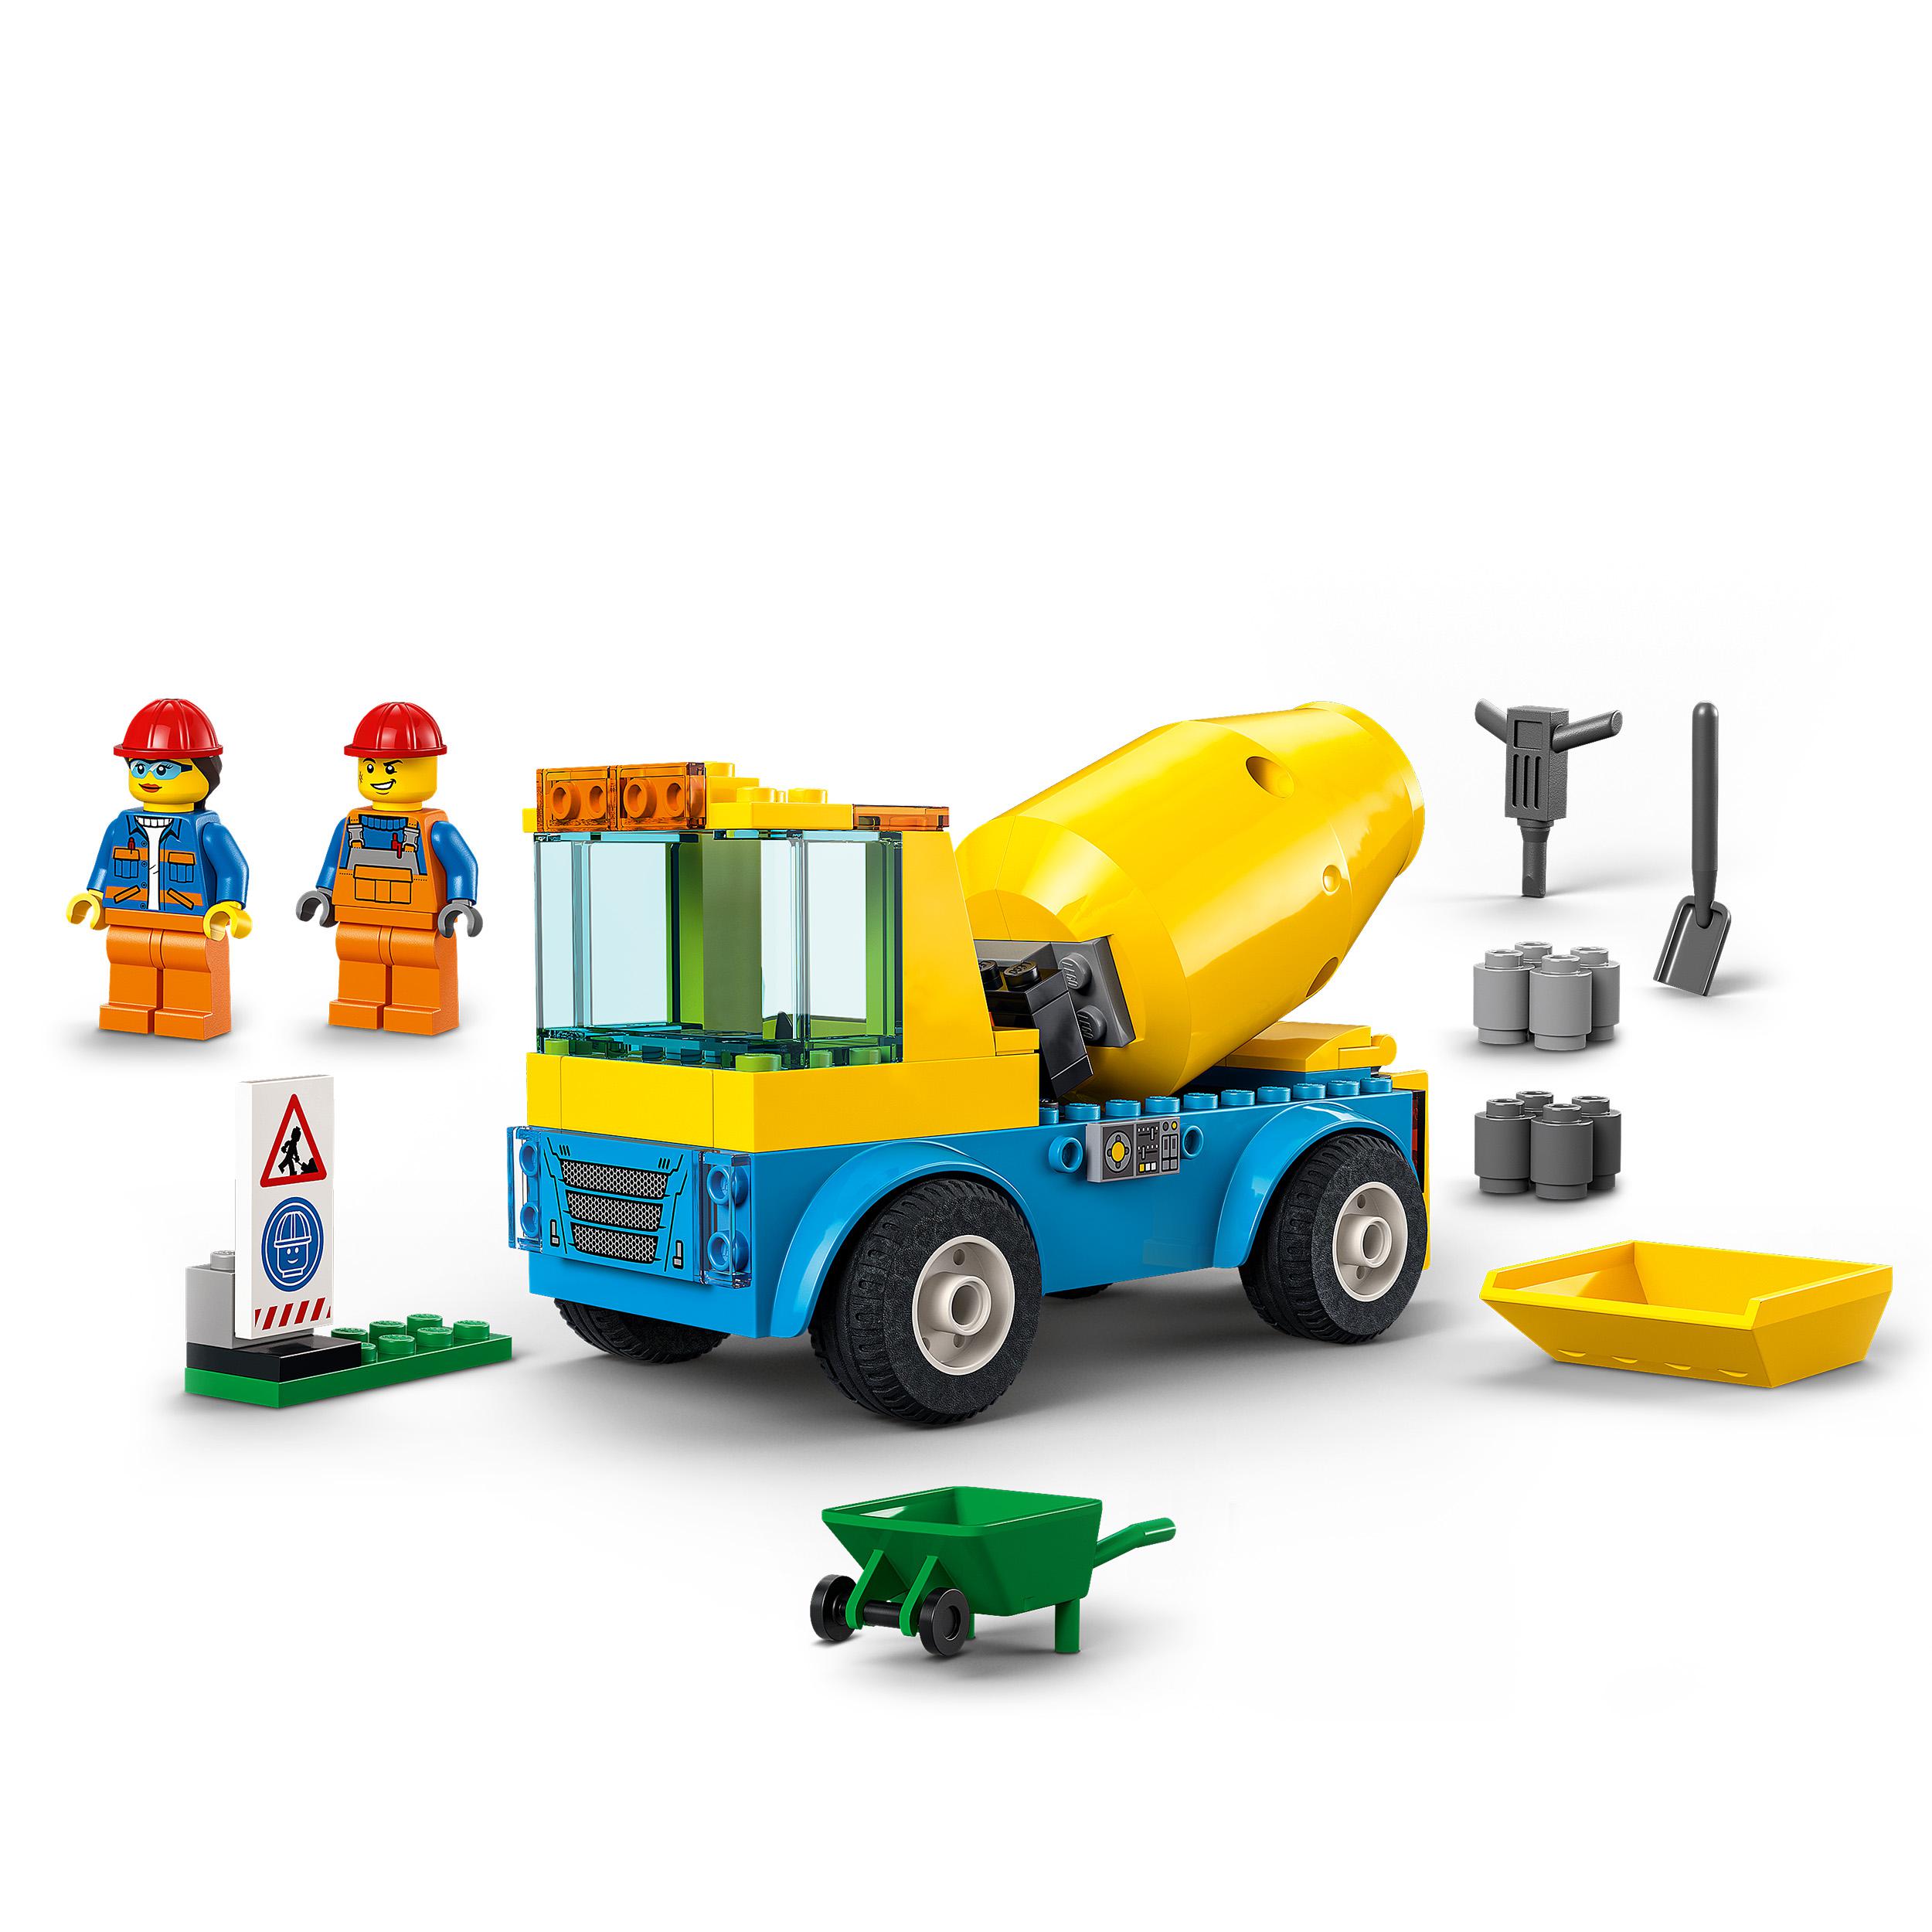 Lego city great vehicles autobetoniera, camion giocattolo, giochi per bambini dai 4 anni in su con veicoli da cantiere, 60325 - LEGO CITY, Lego